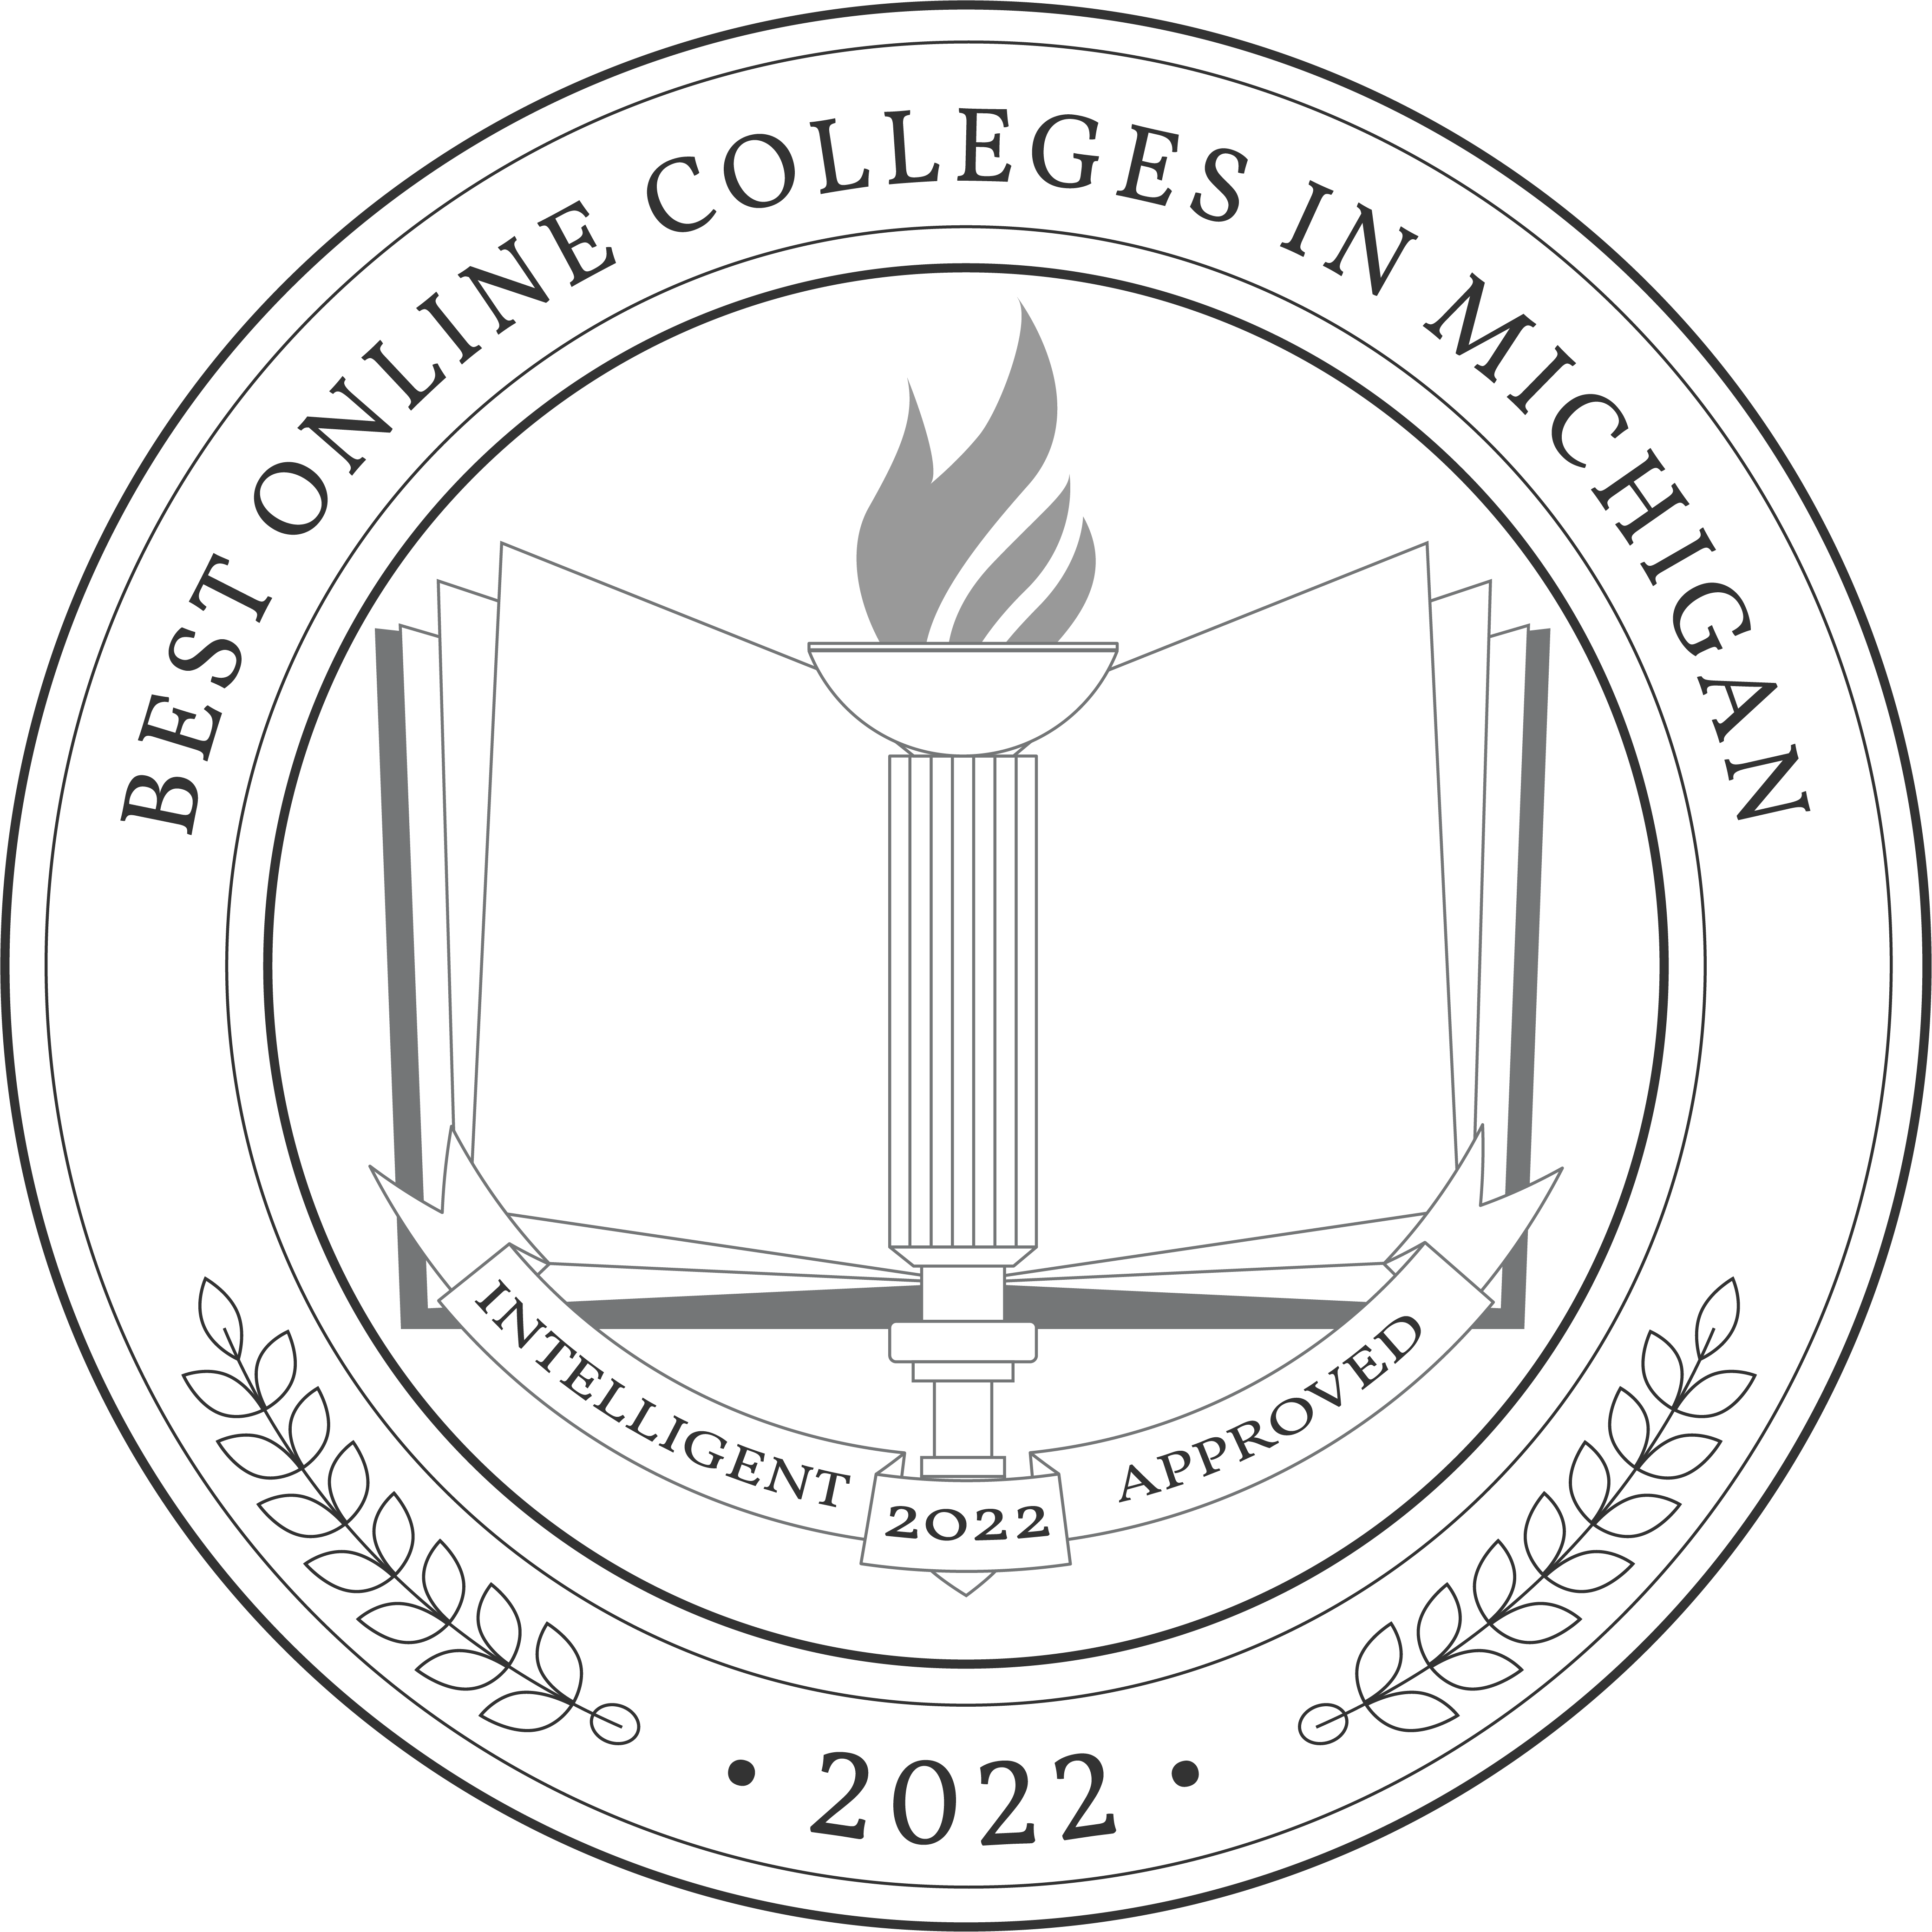 Best Online Colleges in Michigan in 2022 Badge